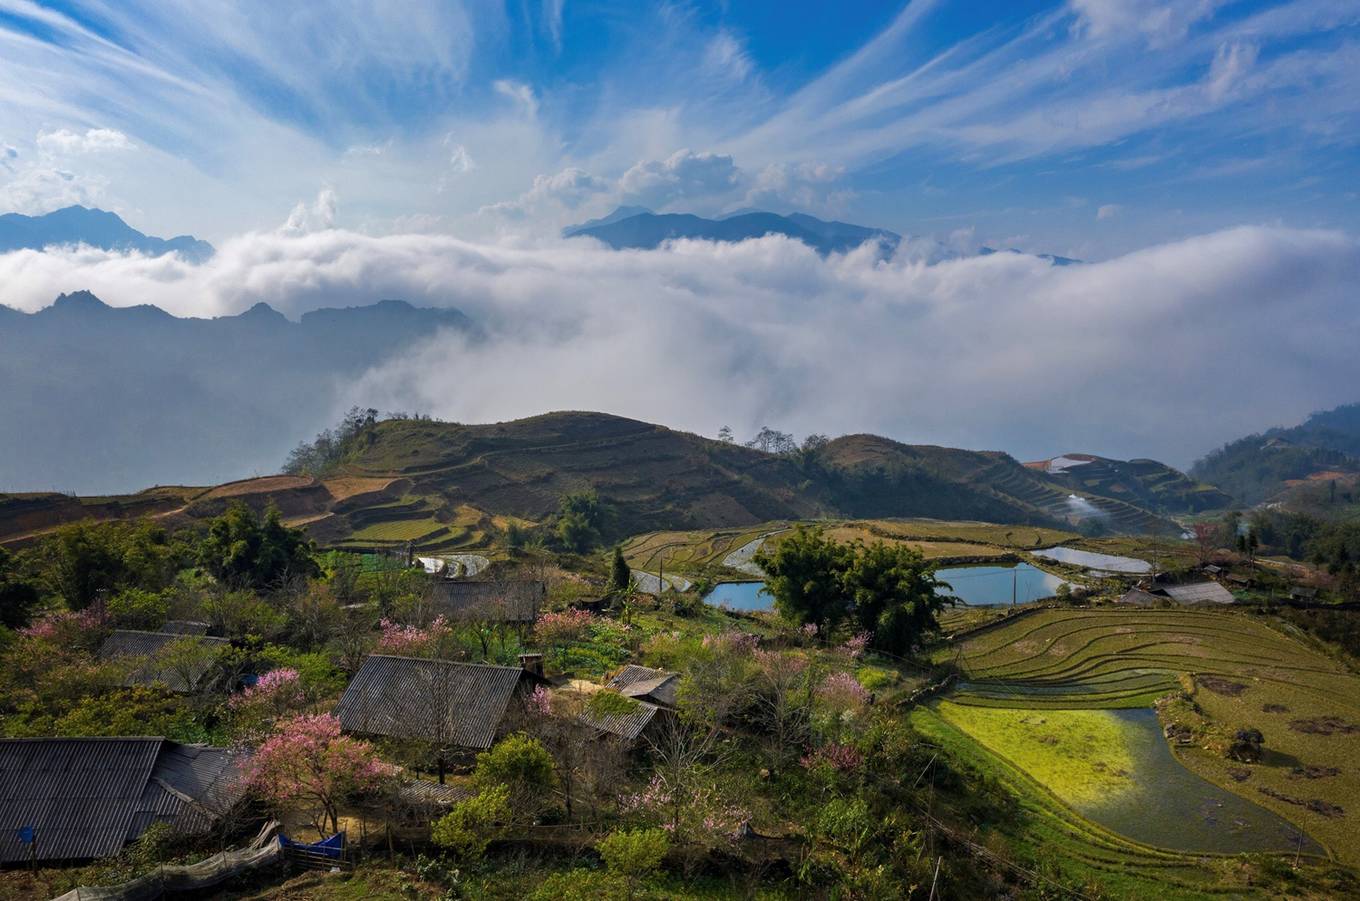 Cảnh đẹp dọc chiều dài Việt Nam nhìn từ trên cao